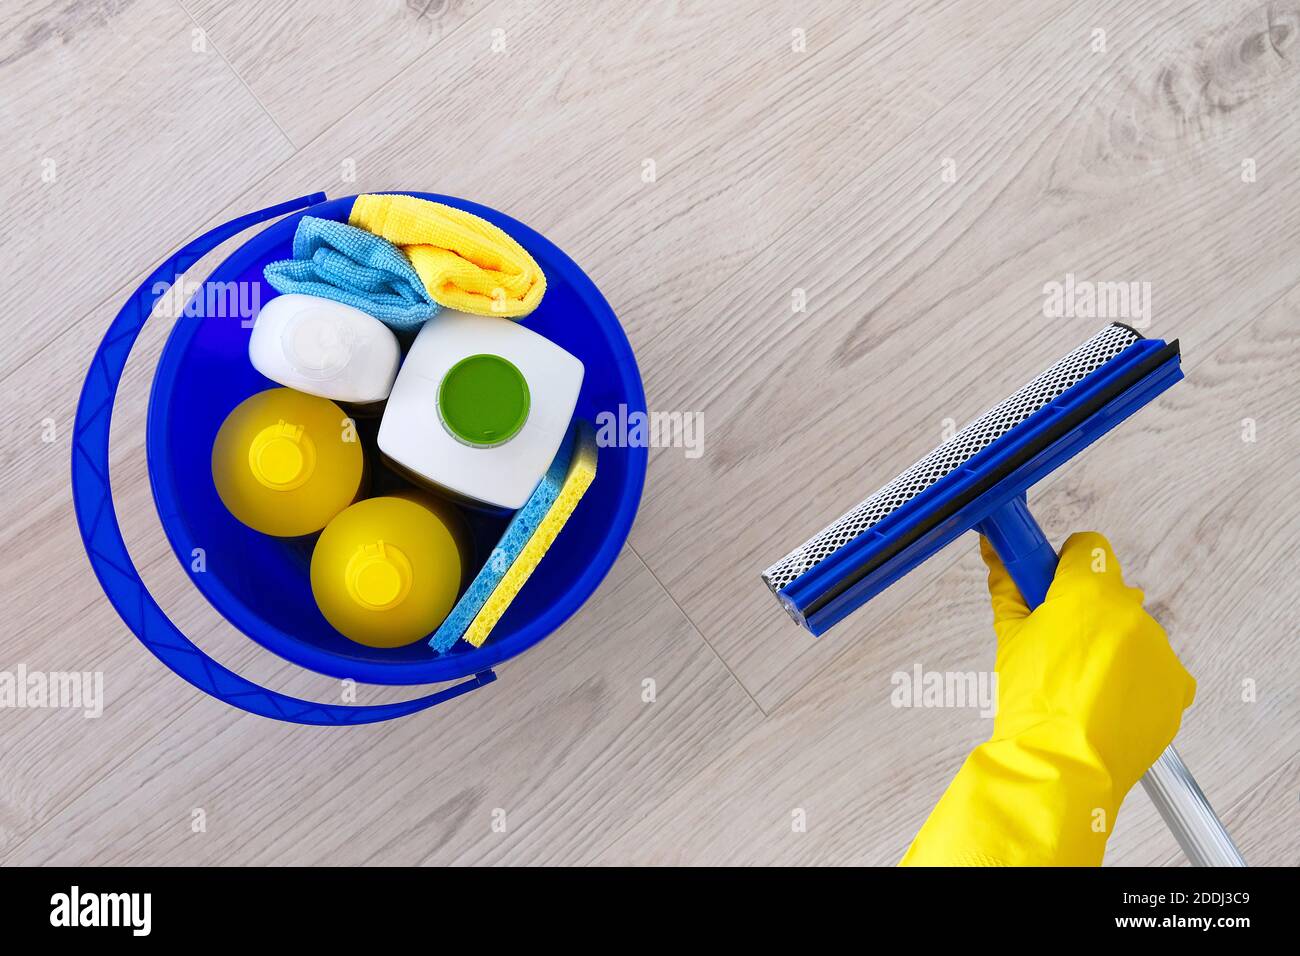 Detergentes en botellas de plástico, esponjas en balde azul para el hogar. Mopa para lavar las ventanas en la mano en guantes de goma amarilla Сleaning accesorios. Lay plano Foto de stock